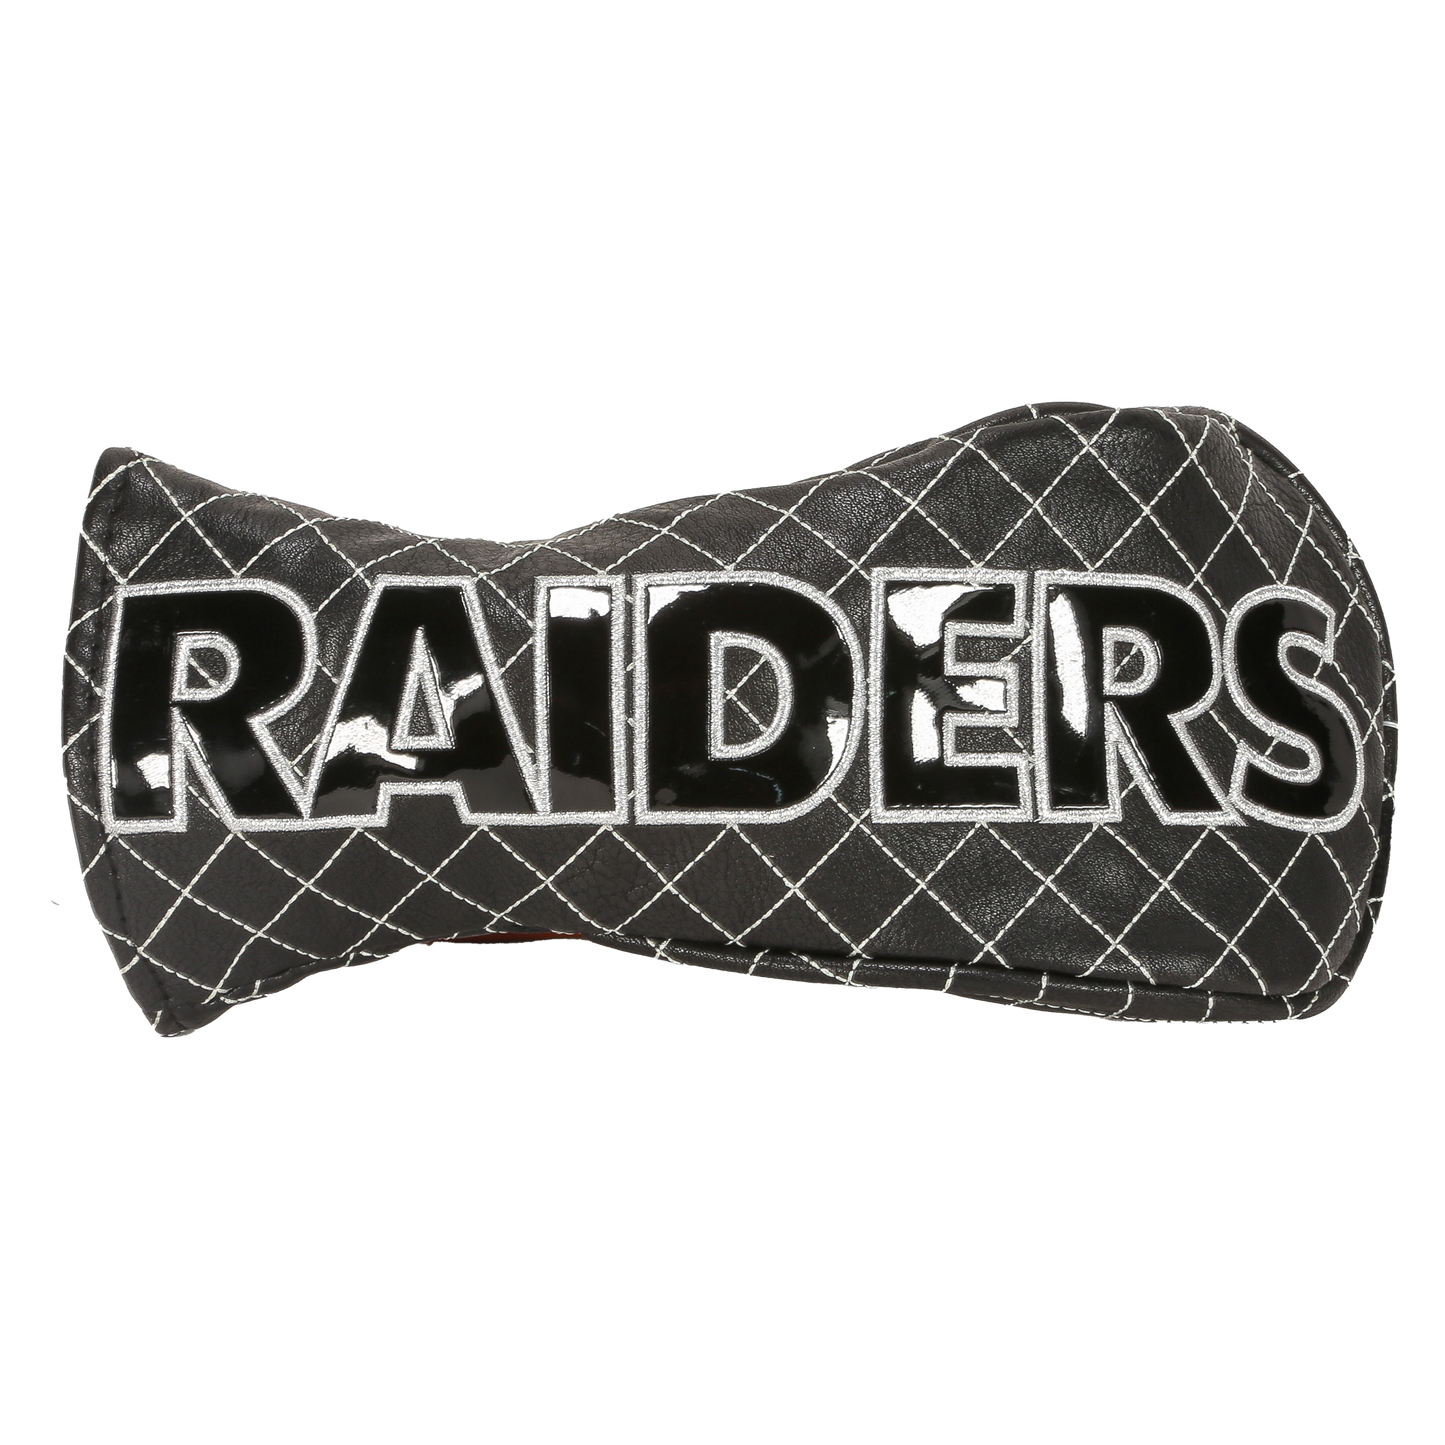 Las Vegas "Raiders" Fairway Cover